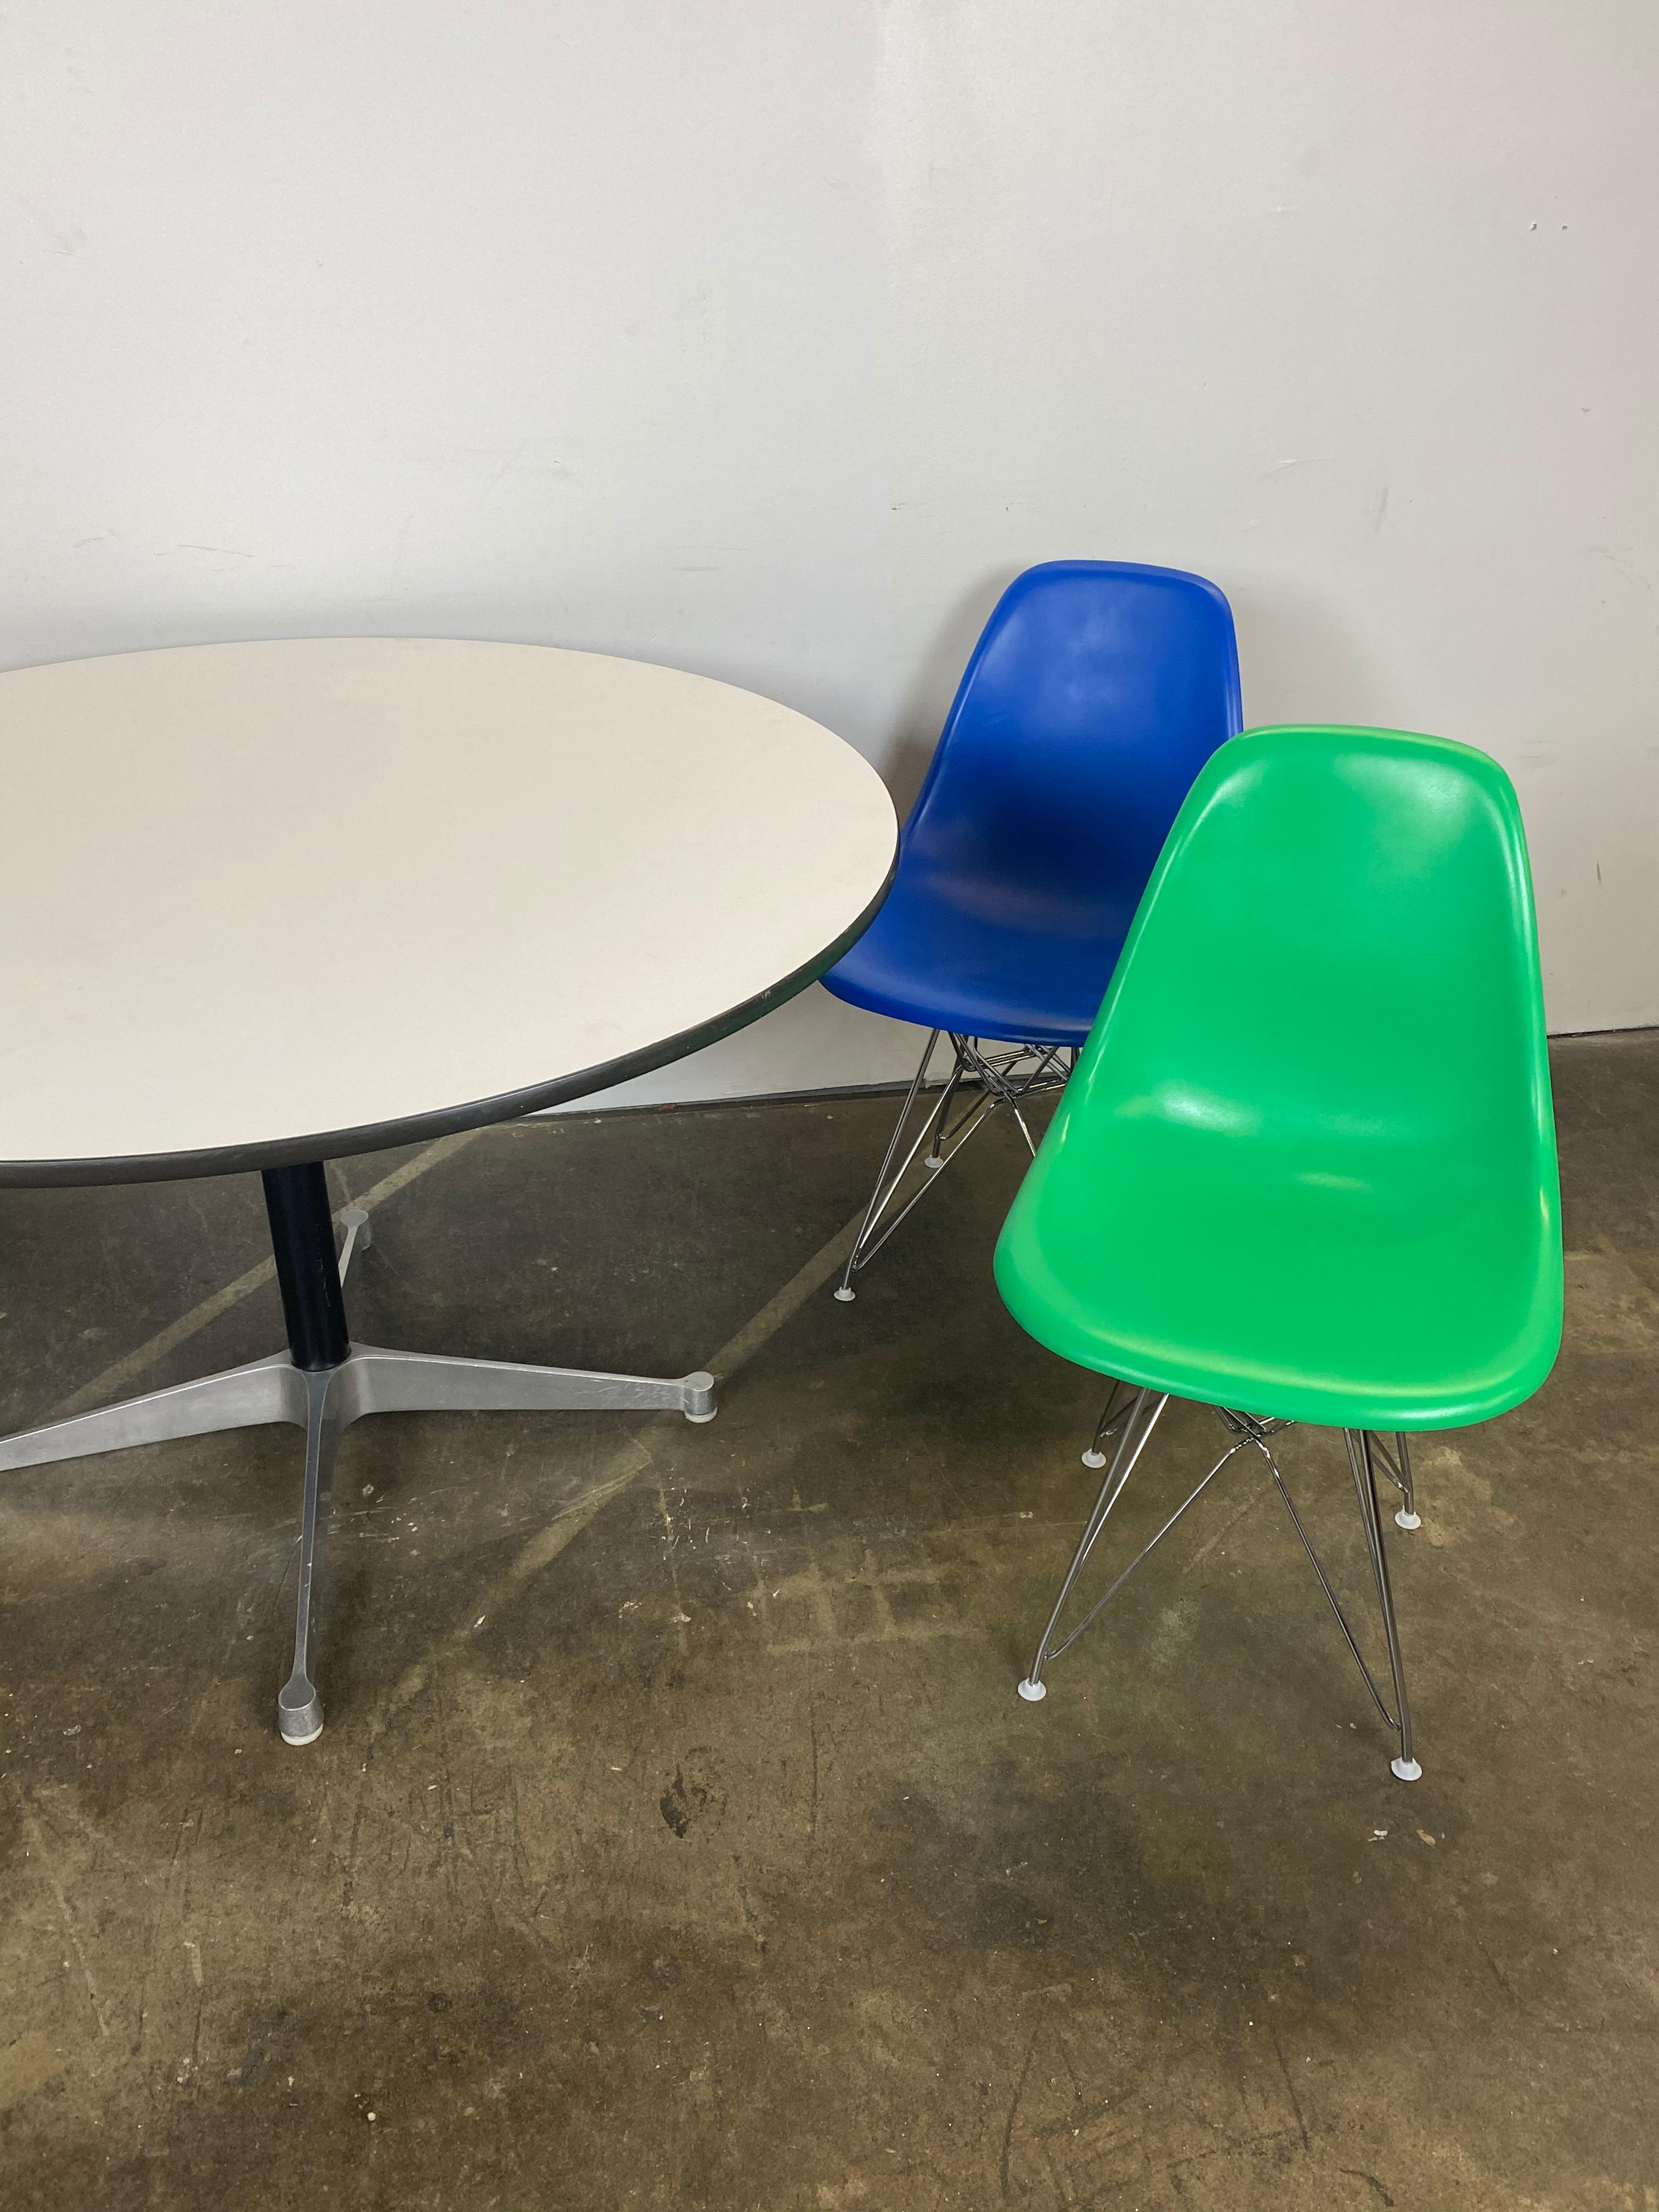 Magnifique et lumineux ensemble de chaises et table de salle à manger Herman Miller Eames. Tous authentiques Herman Miller. Les chaises sont vintage mais ont été colorées dans des couleurs amusantes. Les nouvelles bases Eiffel sont chromées et